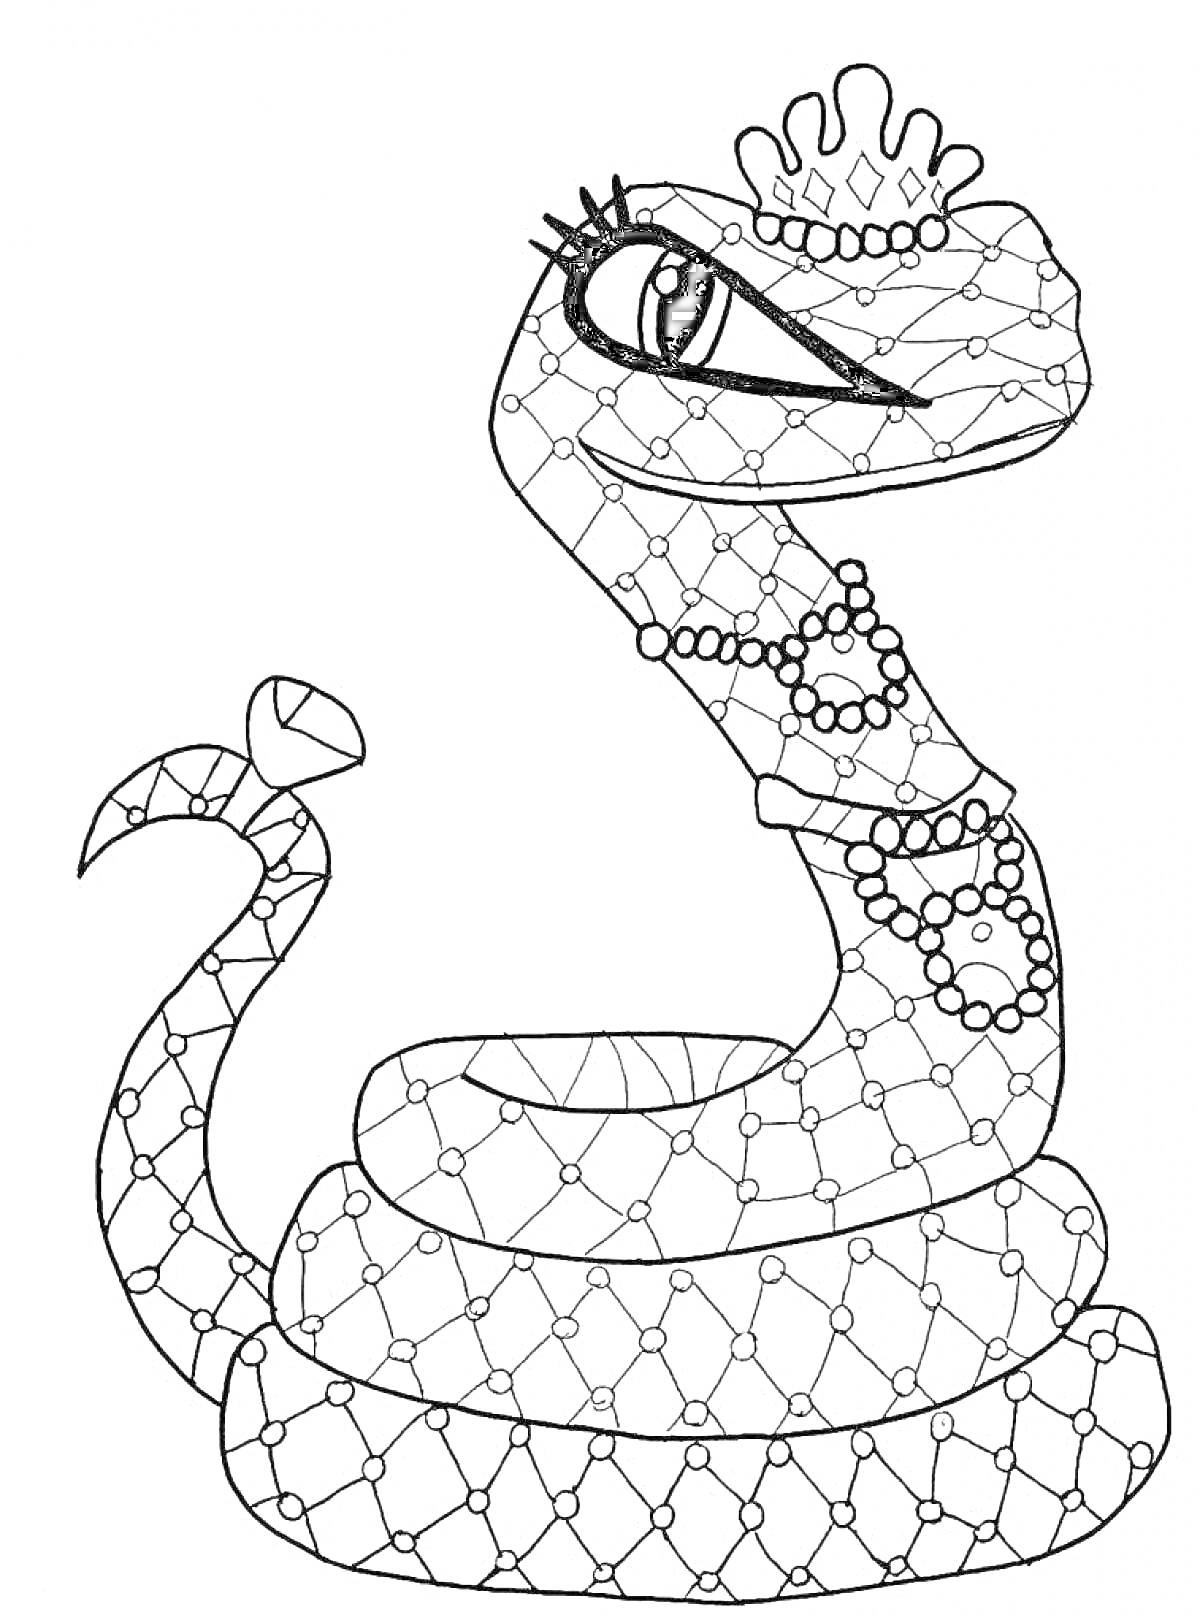 Раскраска Змея с короной, ожерельями и бантом на хвосте